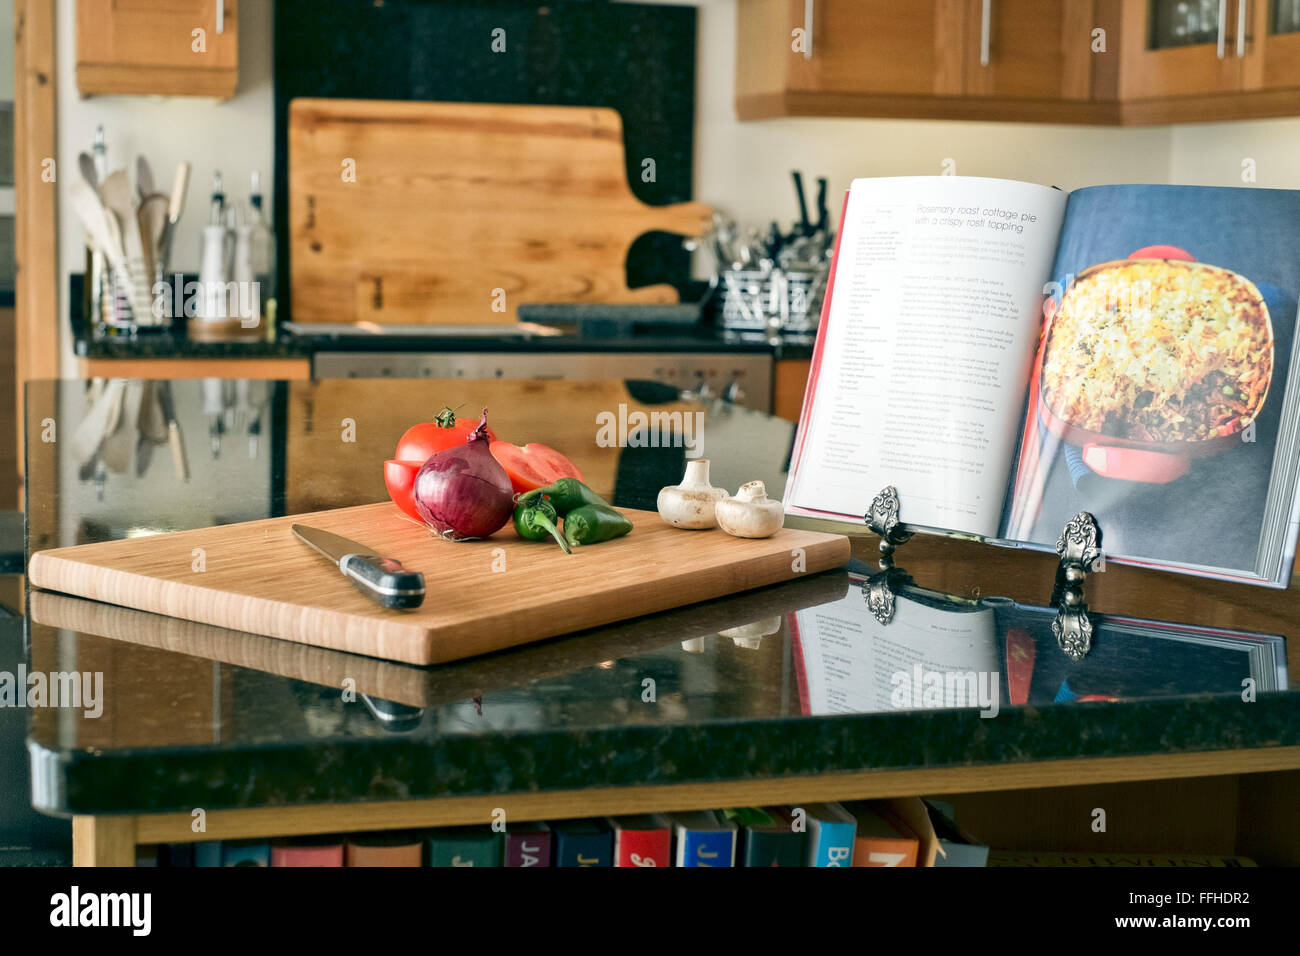 La préparation des aliments dans une cuisine domestique à l'aide d'une planche à découper, couteau et livre de recettes Banque D'Images